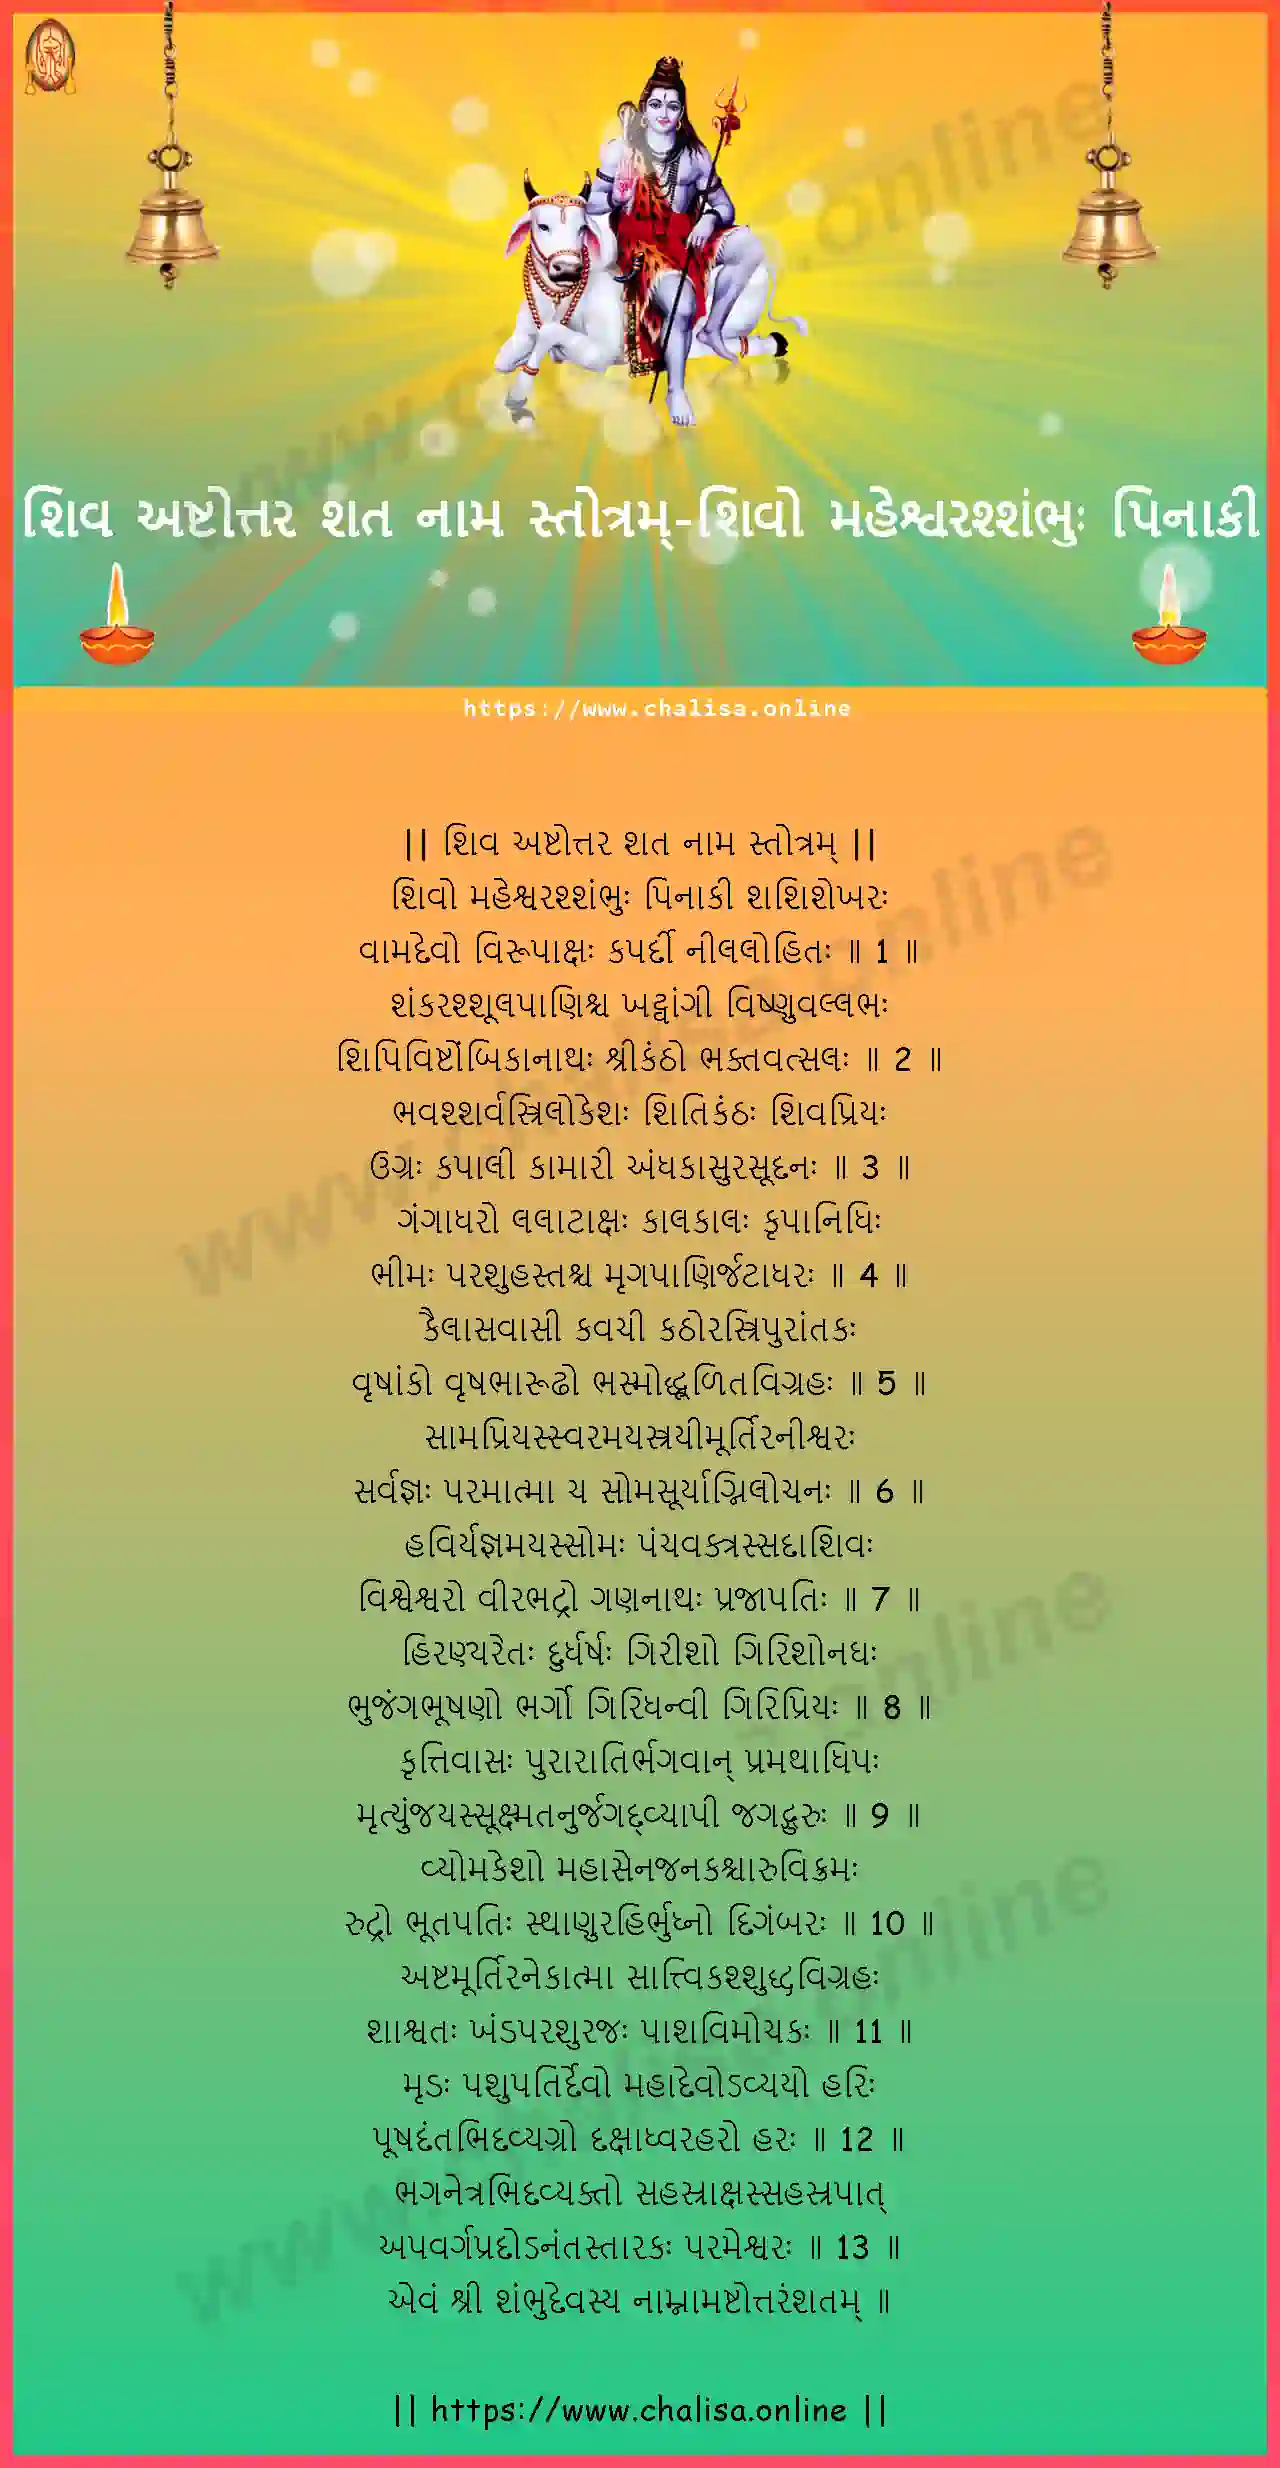 sivo-mahesvarassambhuh-shiva-ashtottara-sata-nama-stotram-gujarati-gujarati-lyrics-download